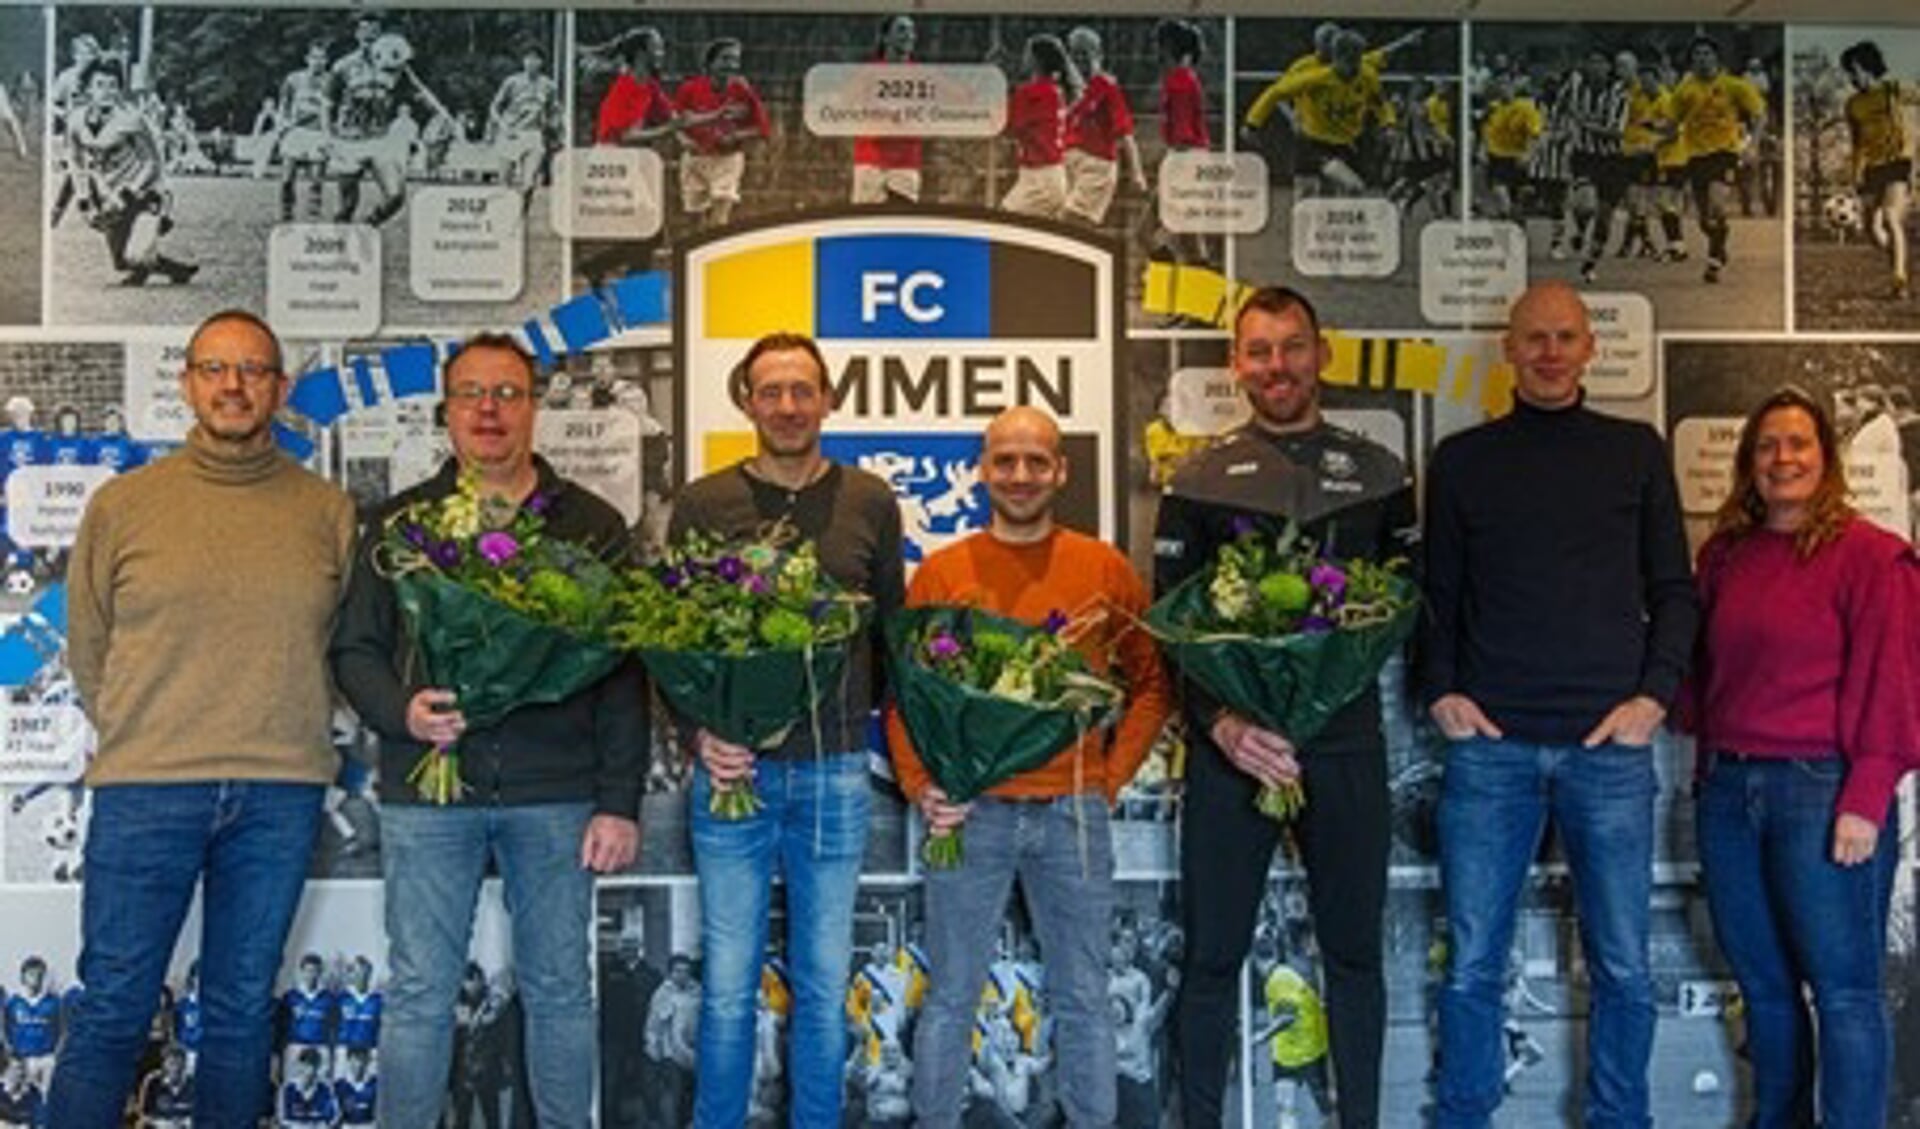 Zaterdag werden bij FC Ommen de contracten van de trainers van de prestatie-elftallen verlengd. Van links naar rechts: Bertus Heuver, Wiljan Willems, Yves Heskamp, Hermen Hogenkamp, Marco Hollak, Arjan Pot en Eline Hekman.